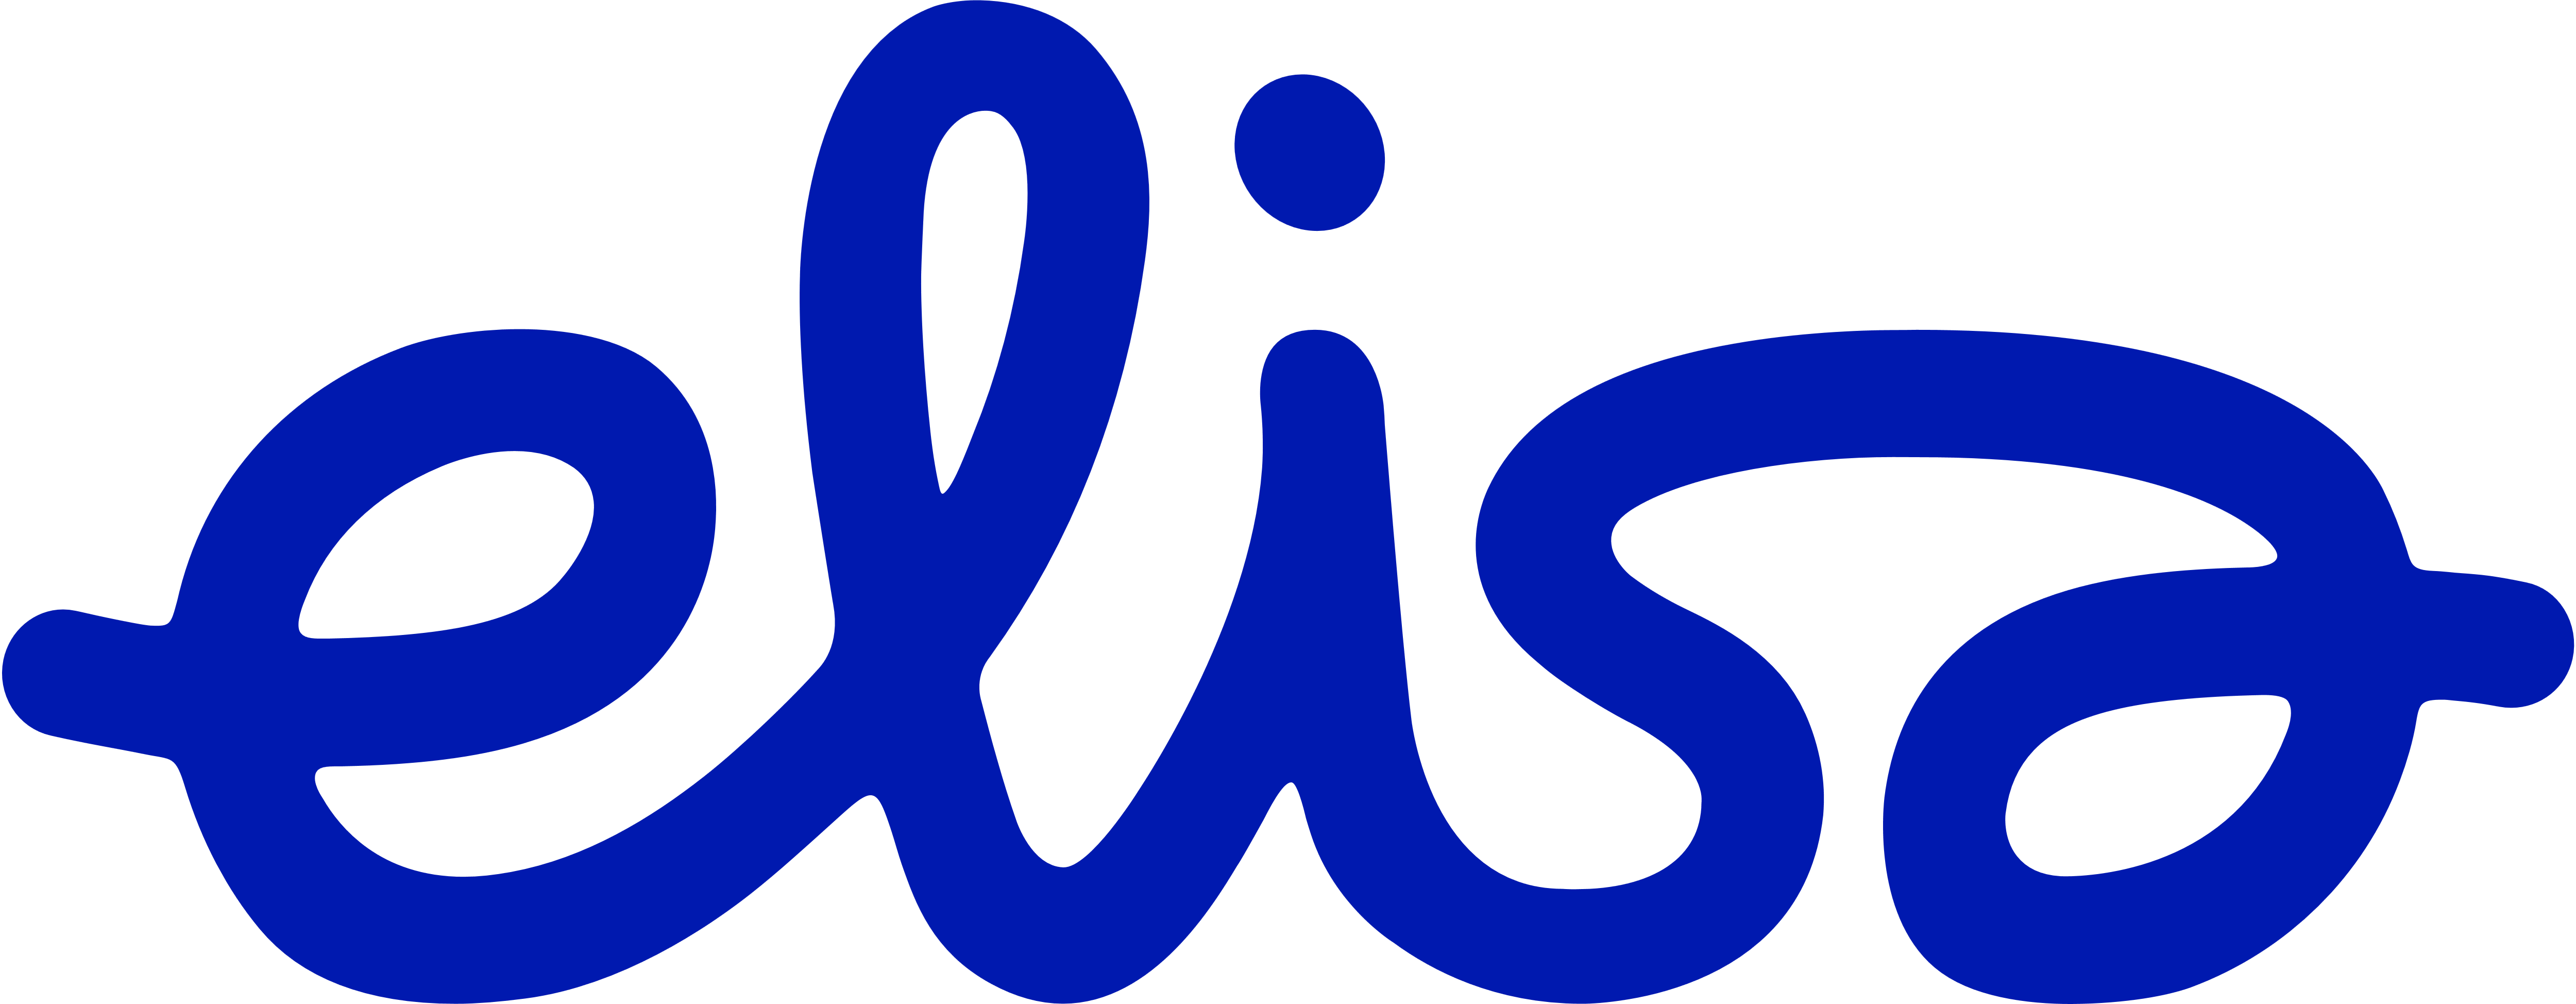 Elisa_logo.png